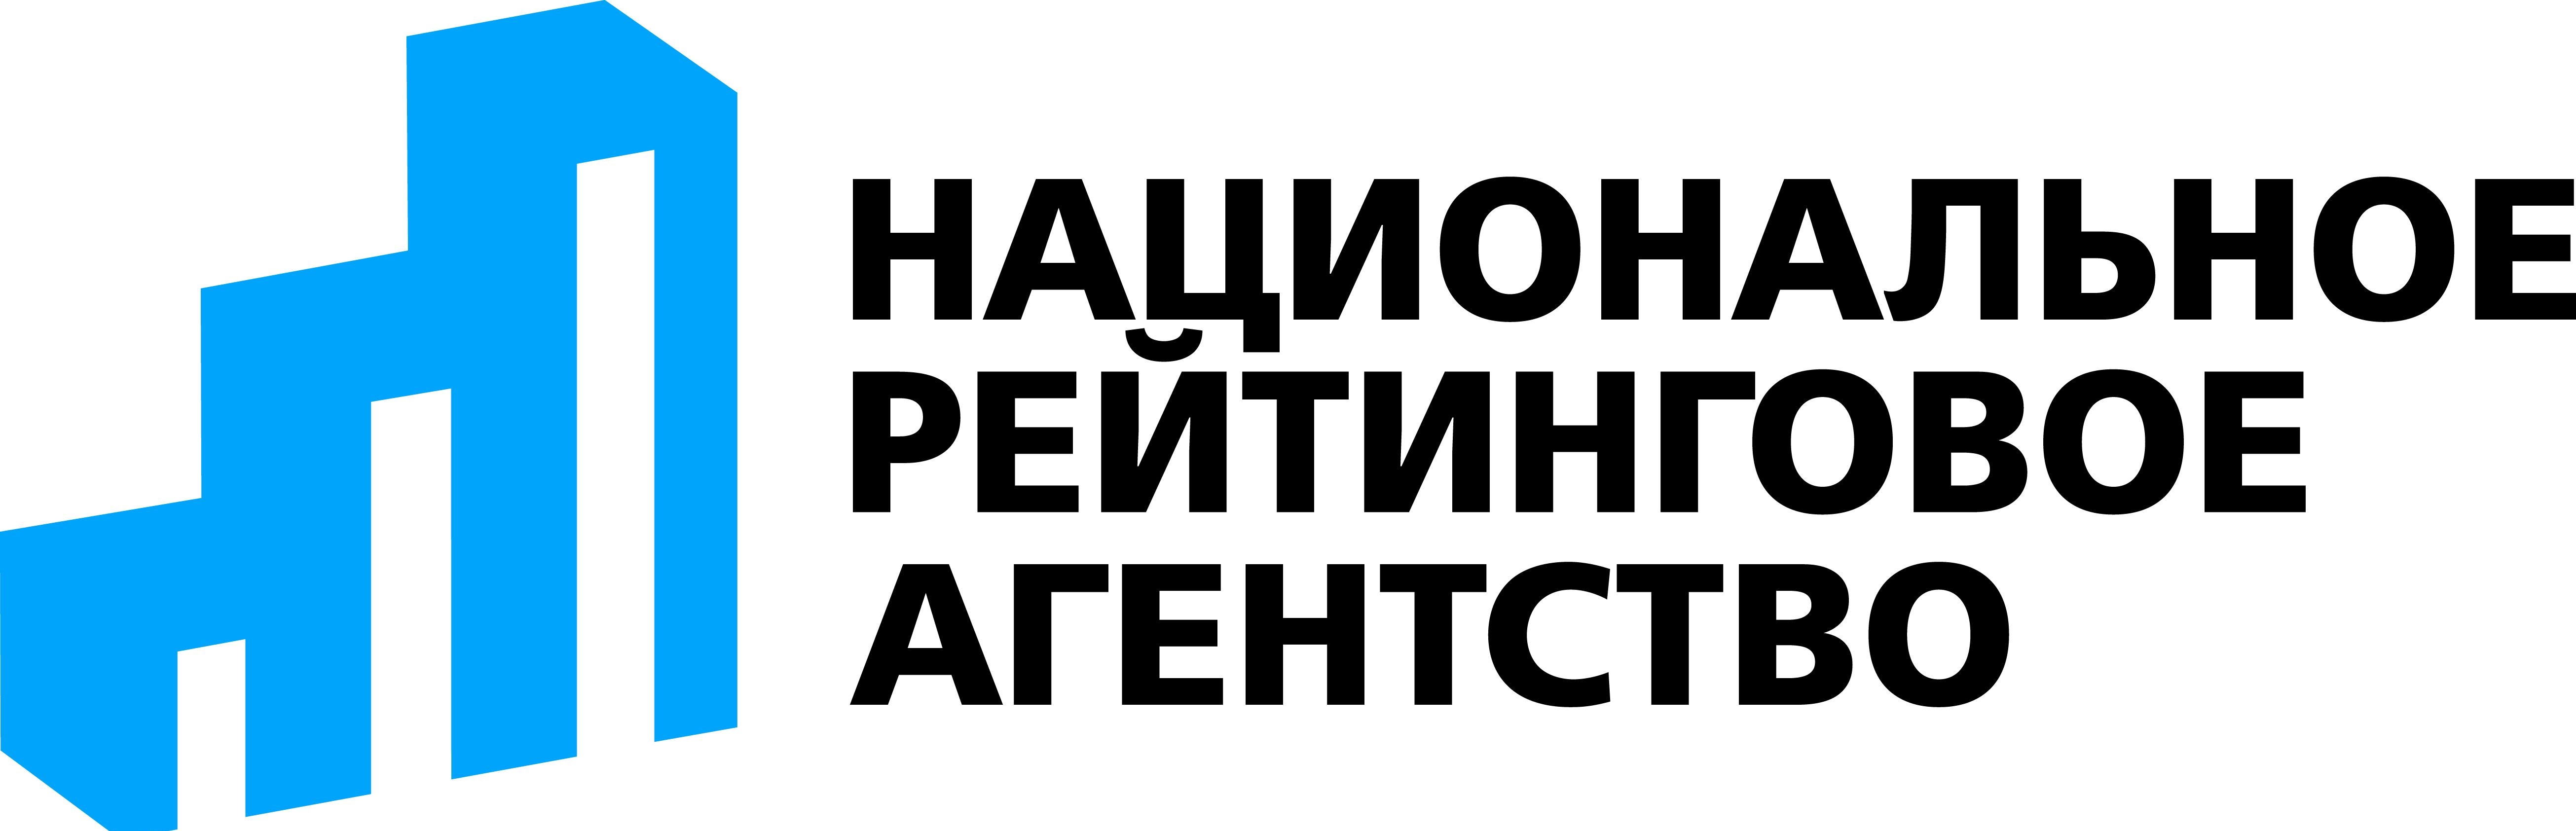 Логотип Национальное Рейтинговое Агентство